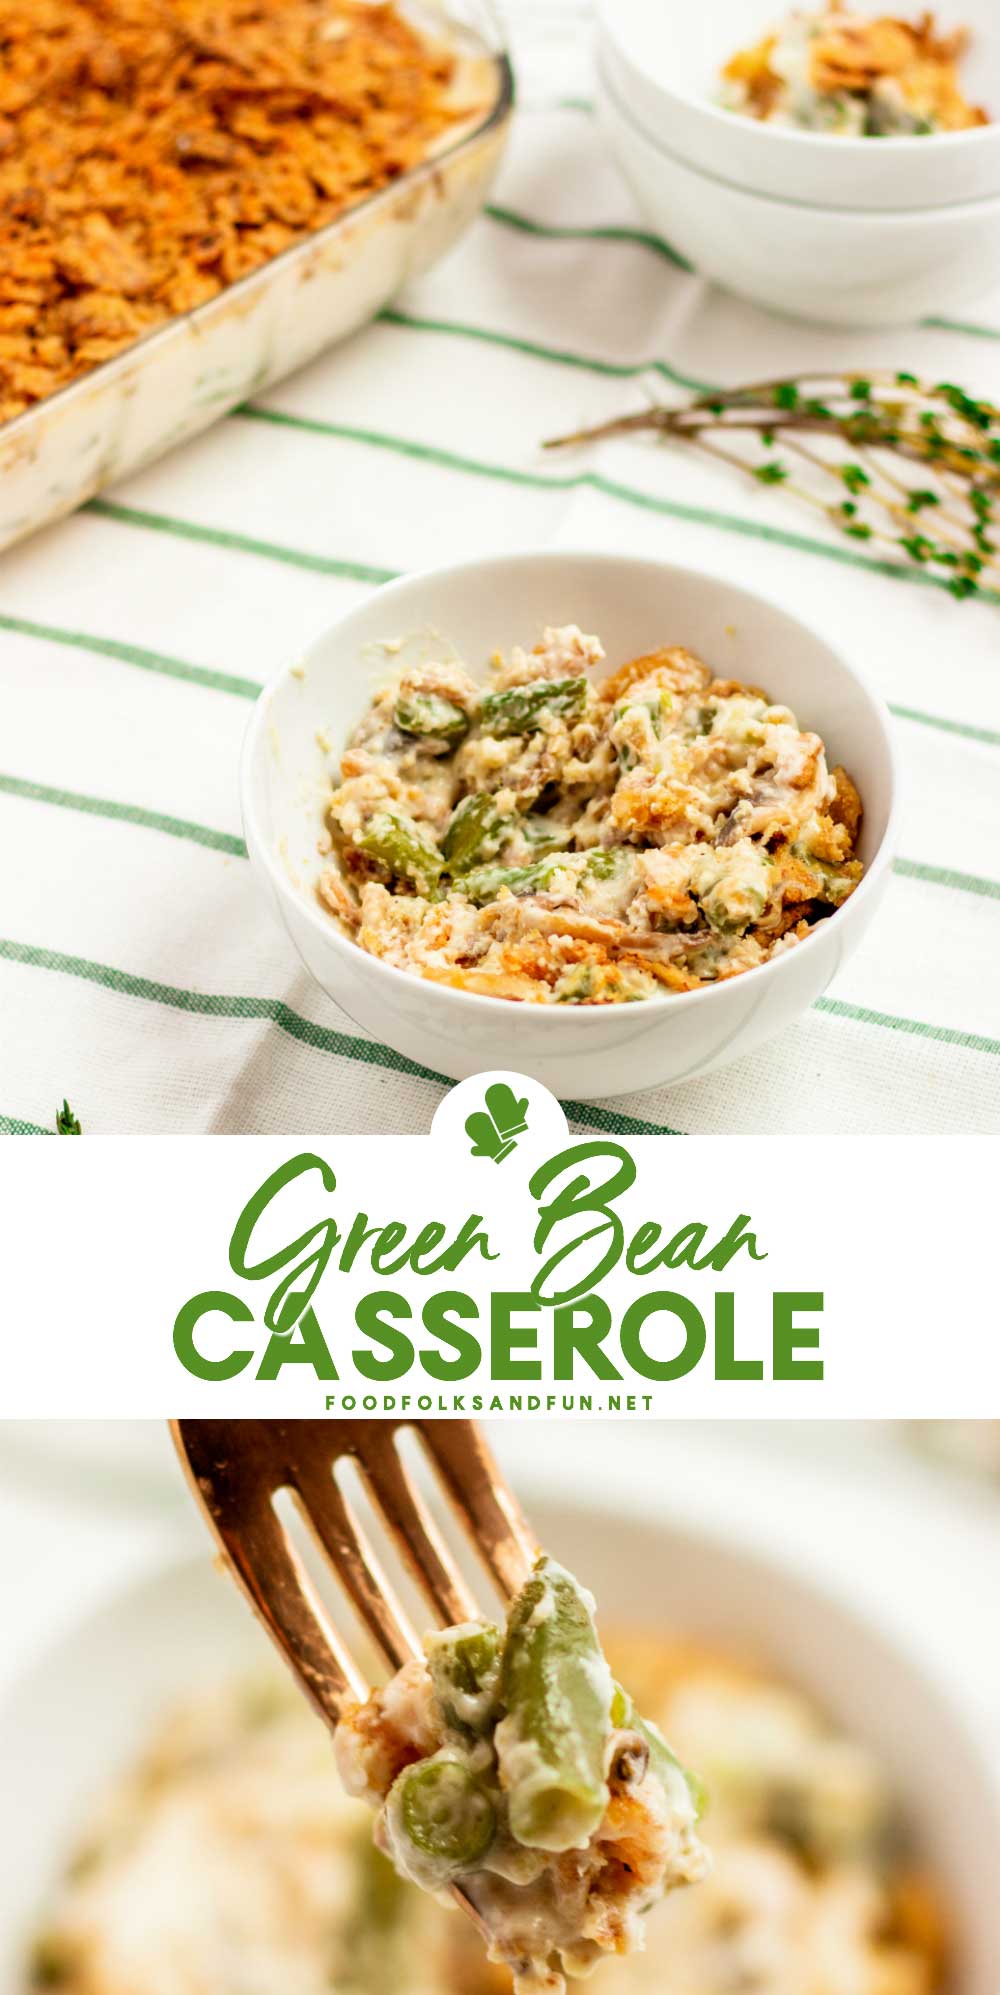 Best Green Bean Casserole